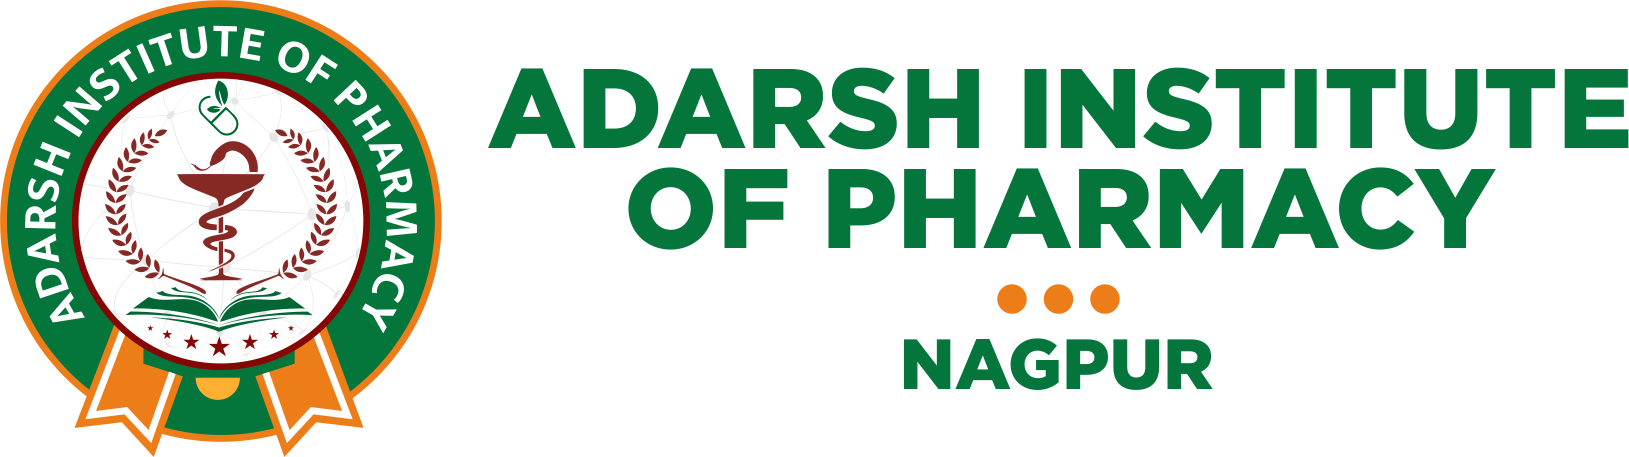 Adarsh Institute of Pharmacy